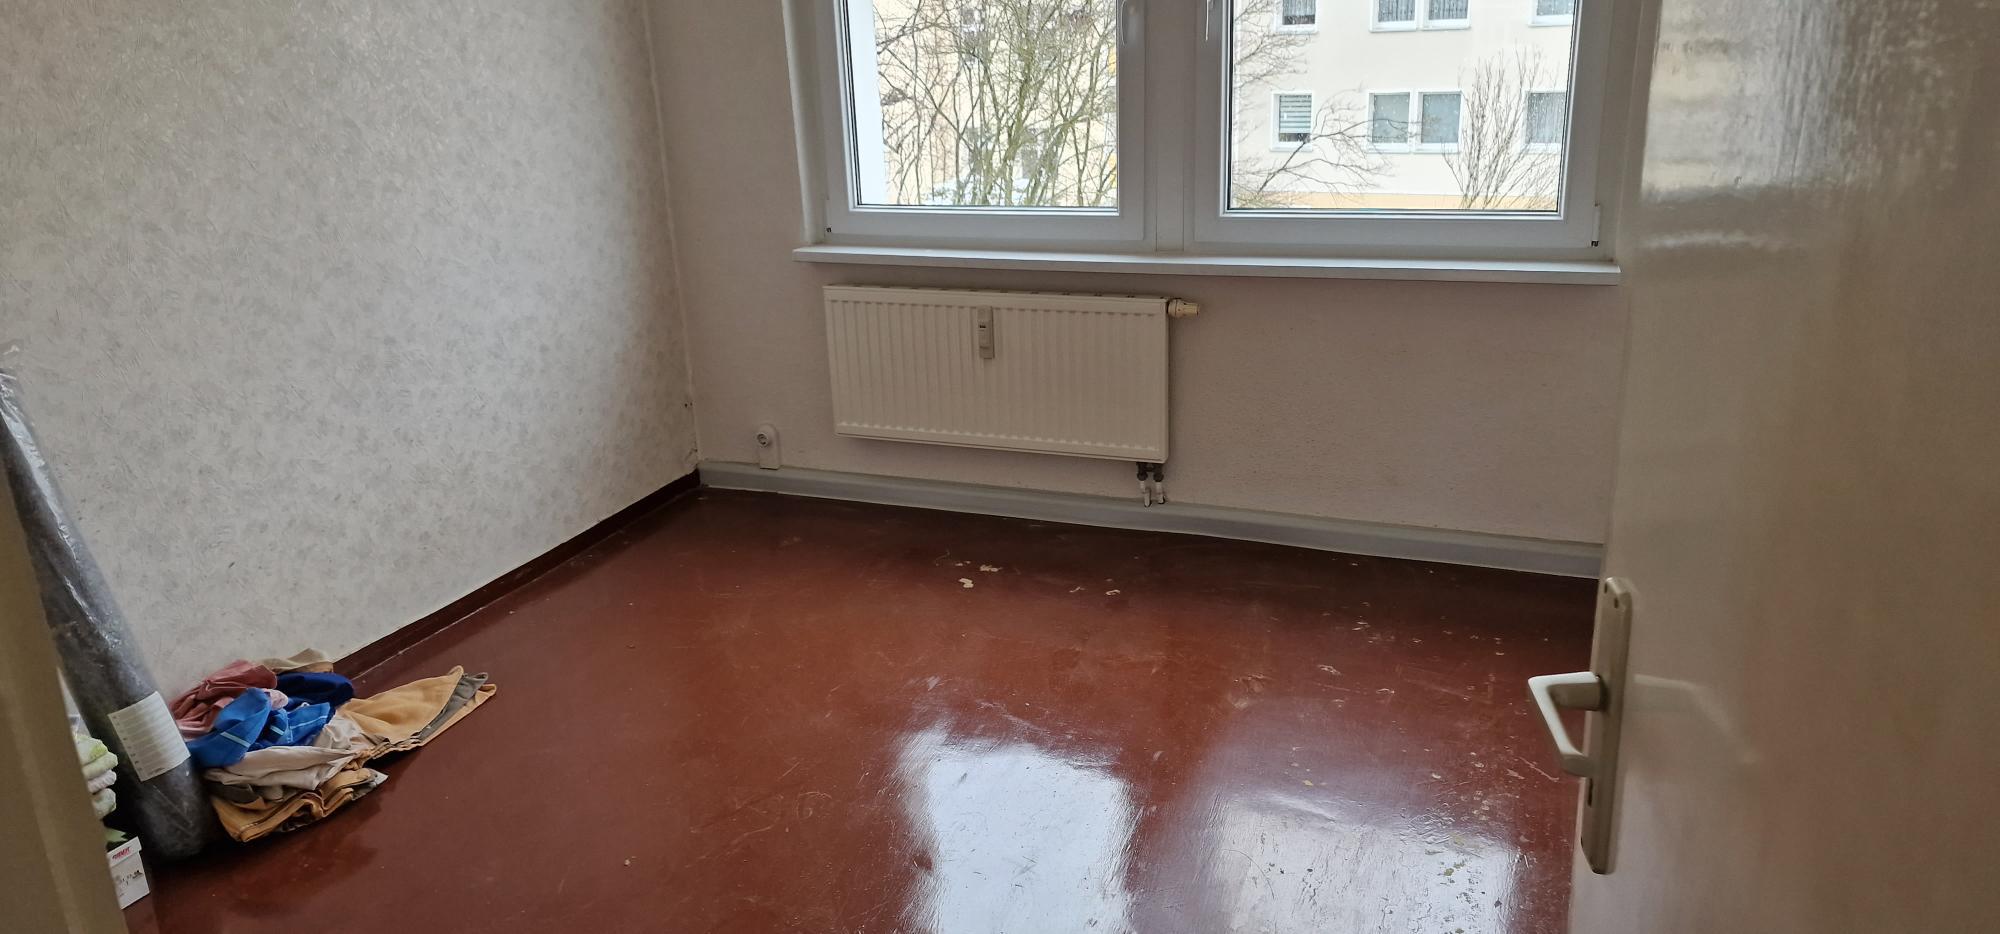 Bild 3 MAUI'S MISSION  Wohnungs- & Haushaltsauflösungen in Görlitz